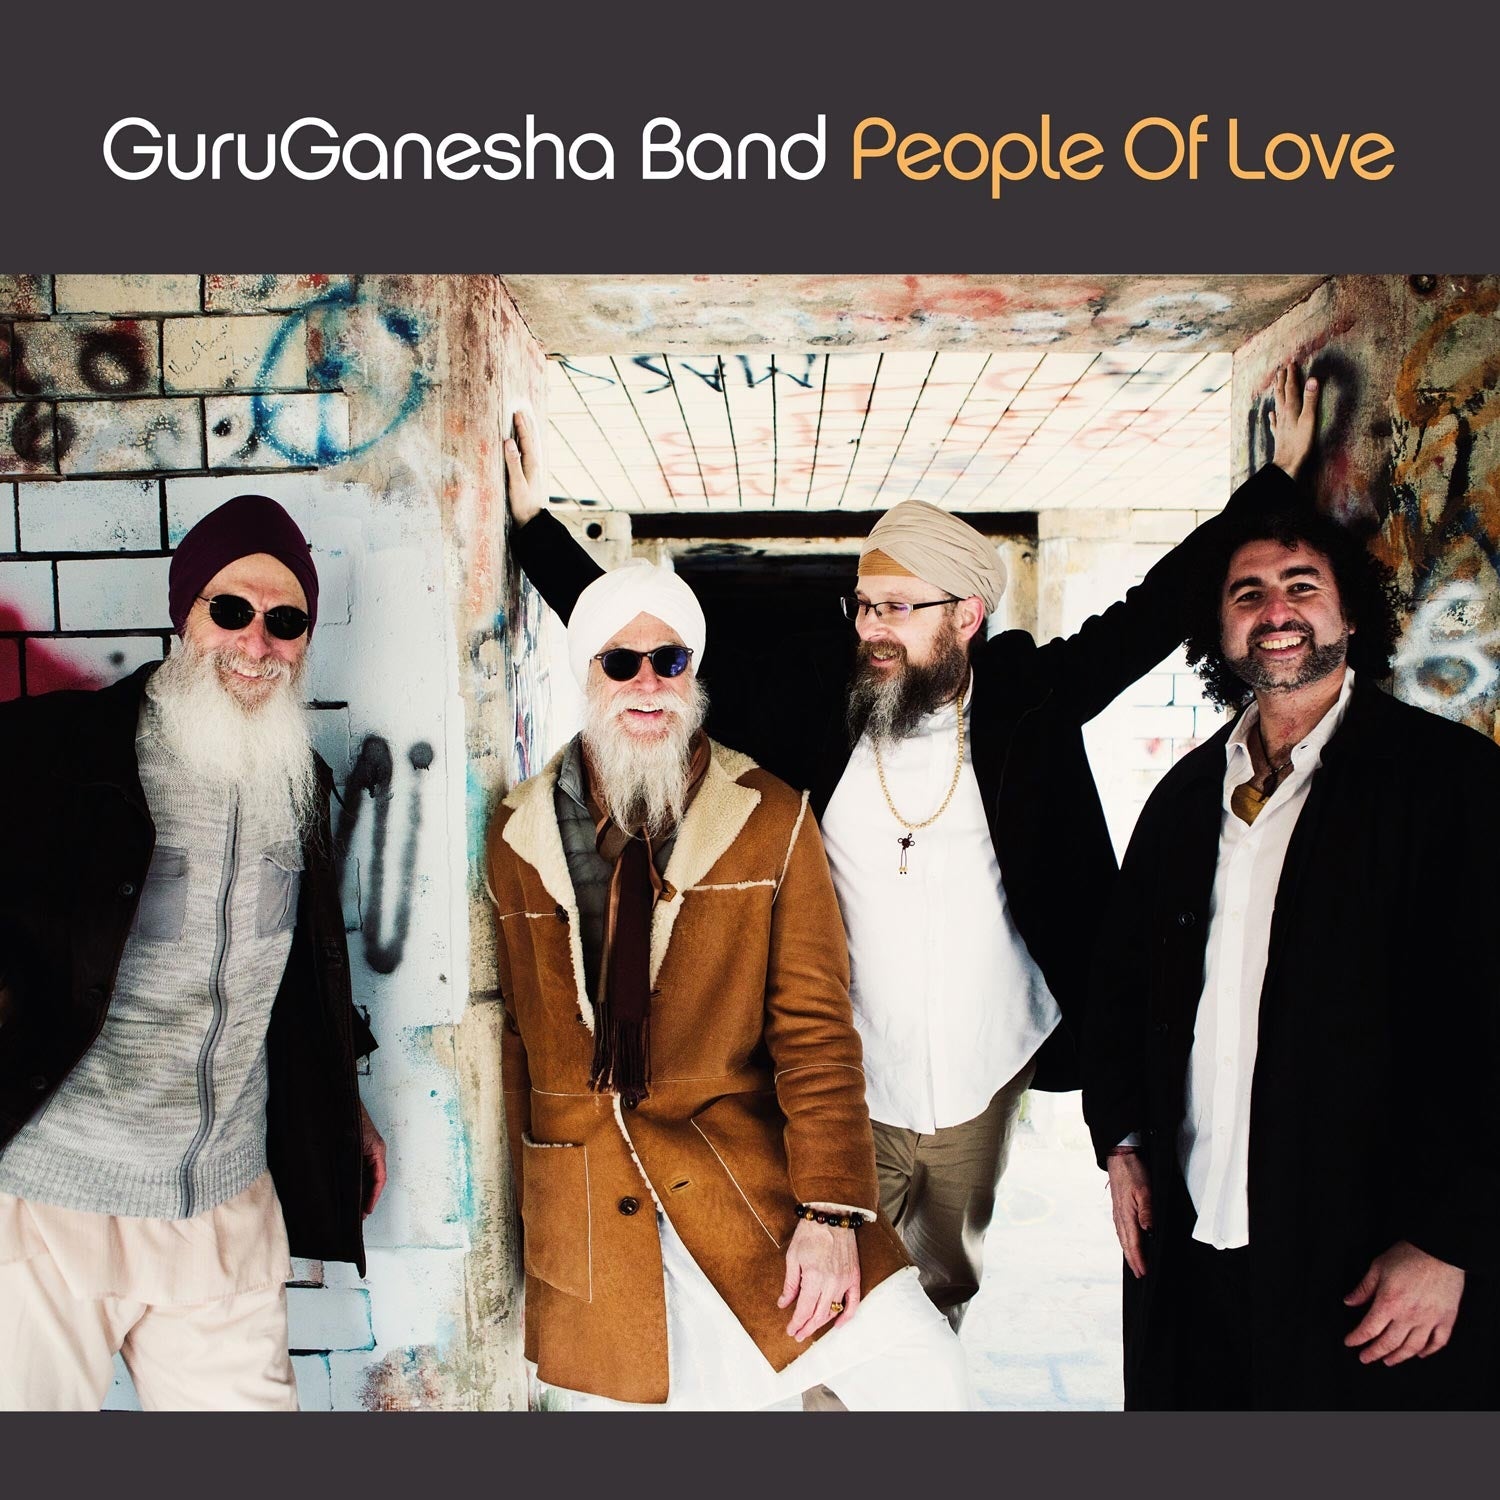 People of Love - GuruGanesha Band